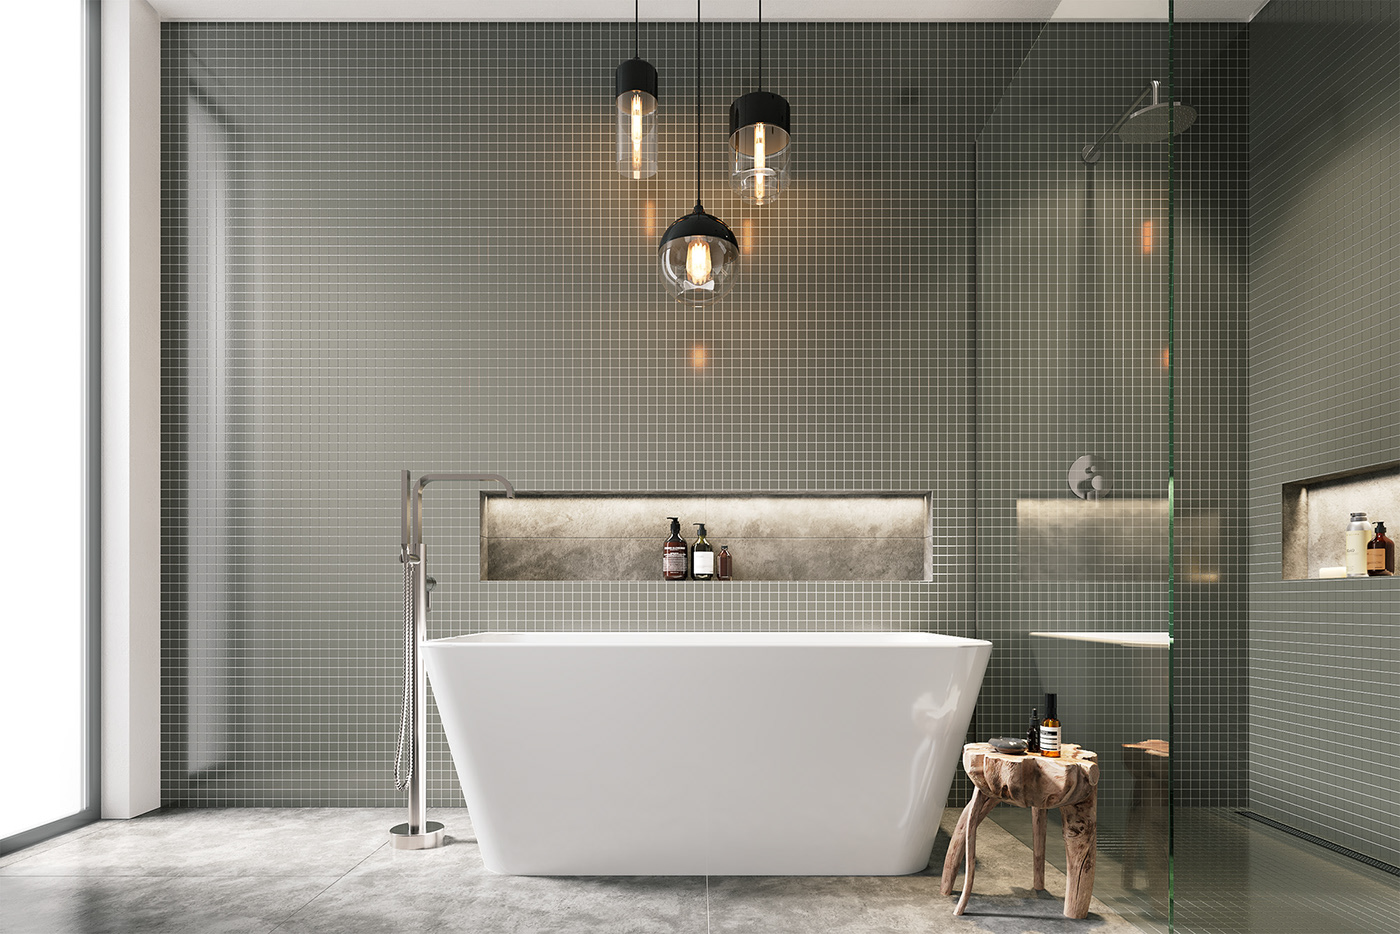 bathroom corona renderer Render Worx 3ds max bathroom design